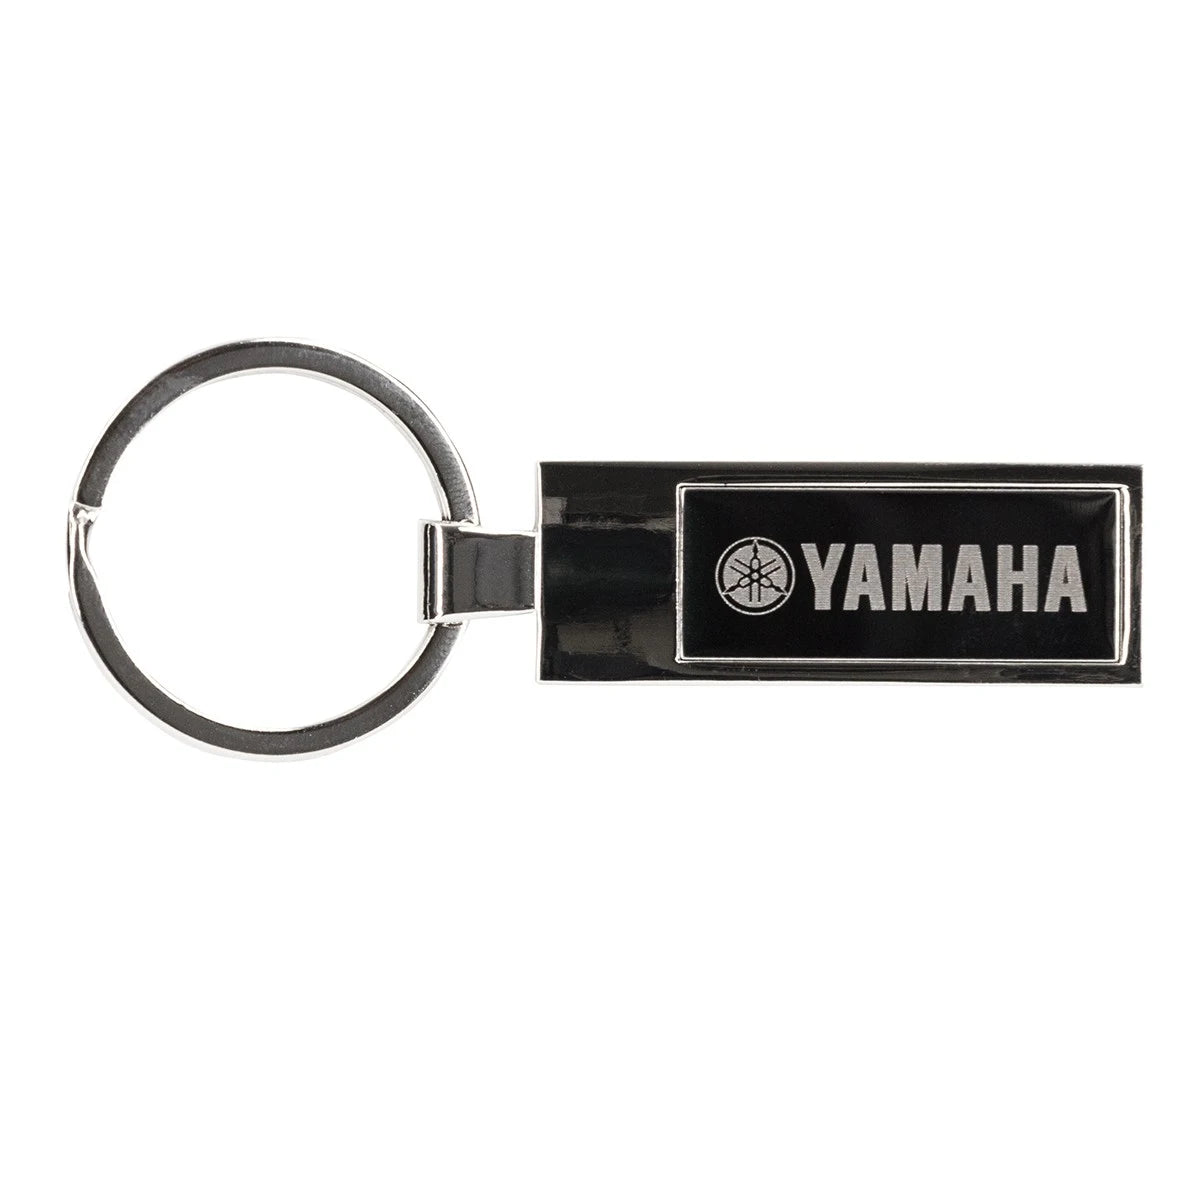 Yamaha Chrome Key Chain